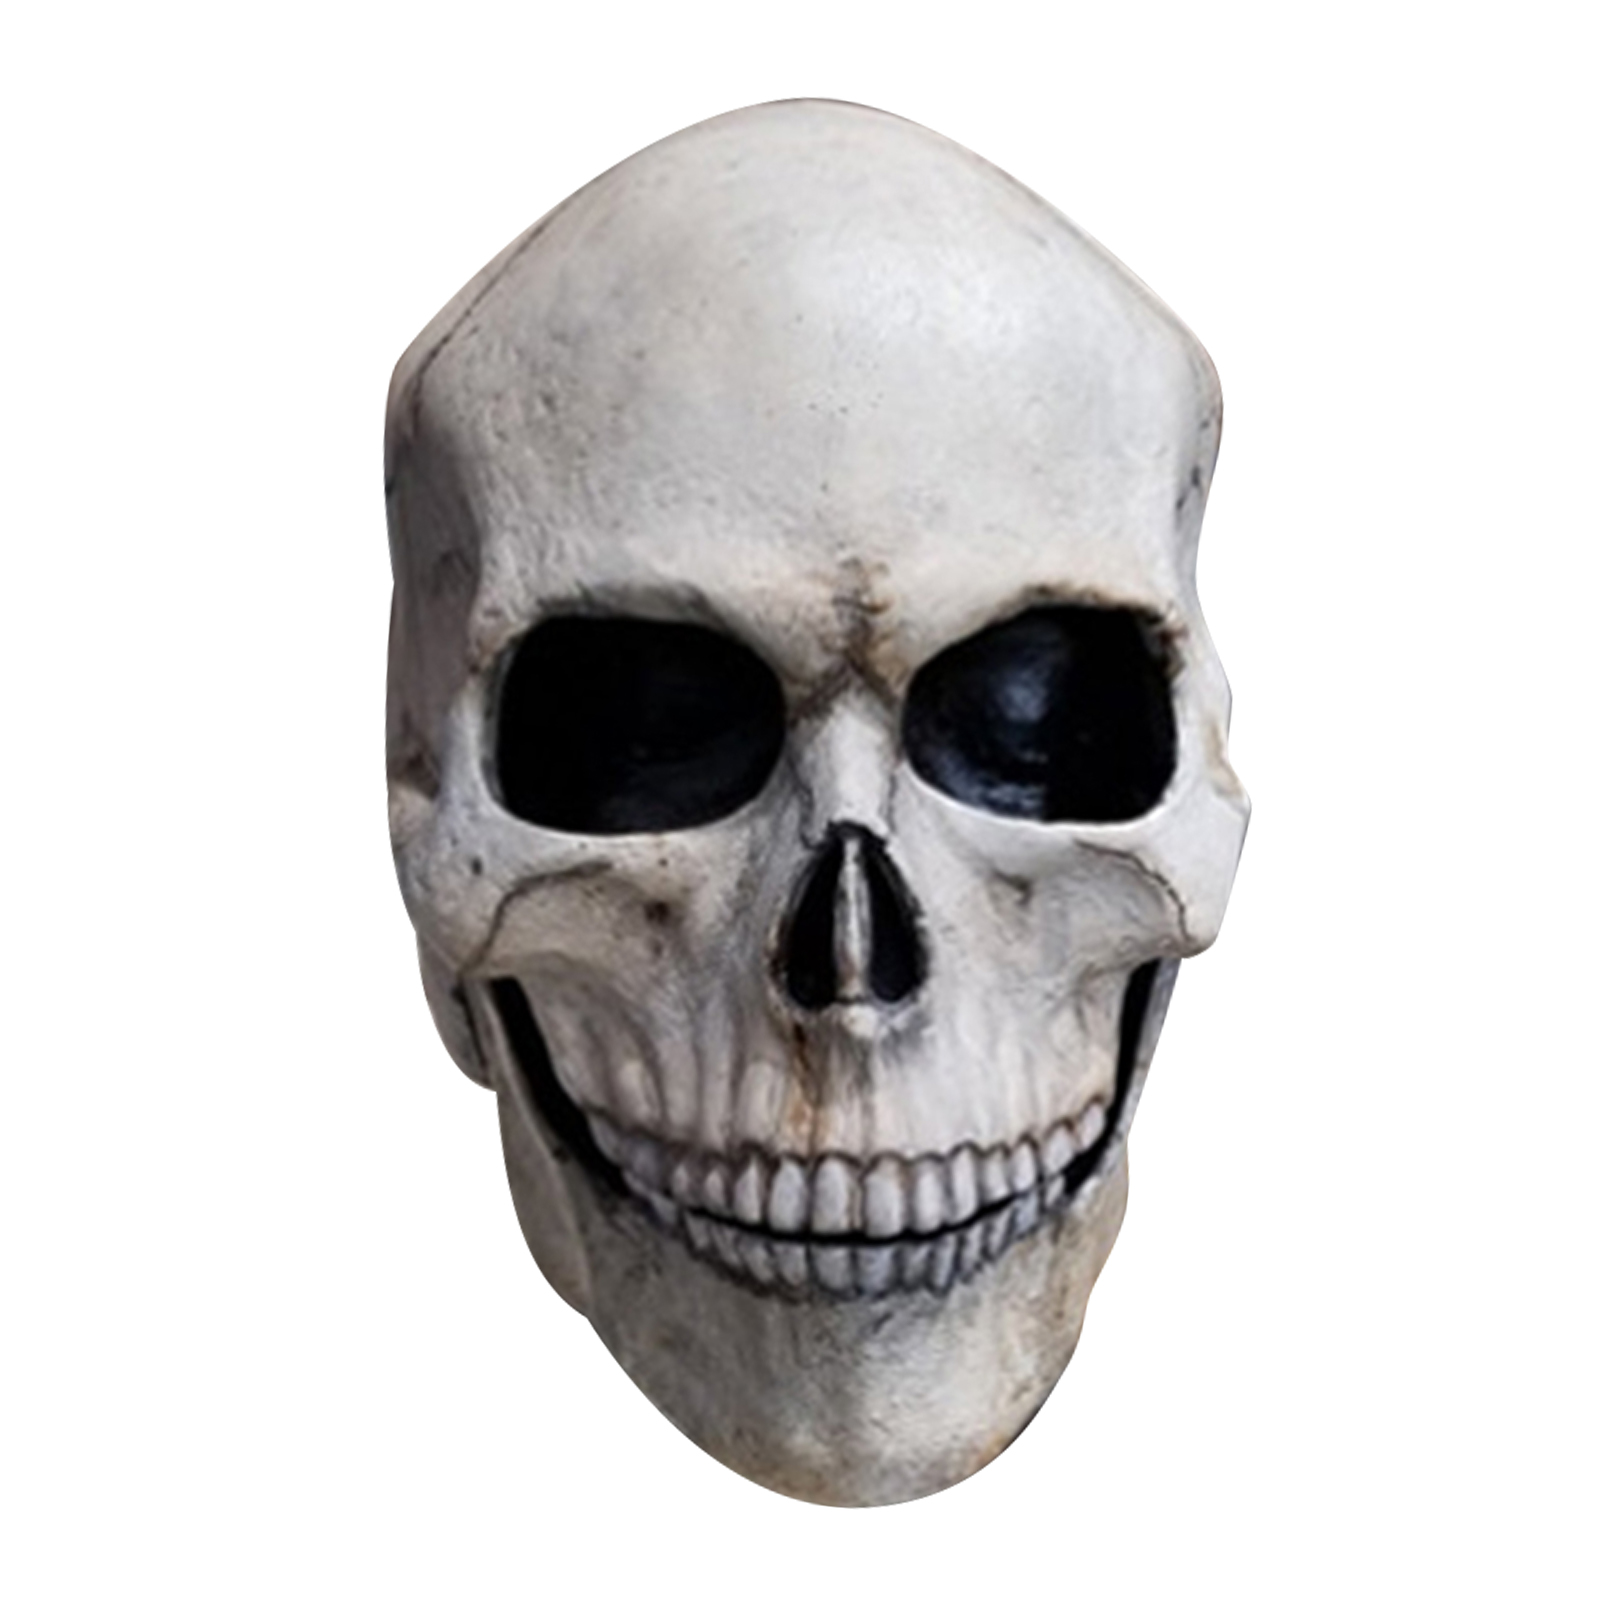 JAREDQ การ์ตูนผ้าคลุมหน้ายืดหยุ่นประณีตเอฟเฟคต์ภาพเคลื่อนไหว Skull Head Decor